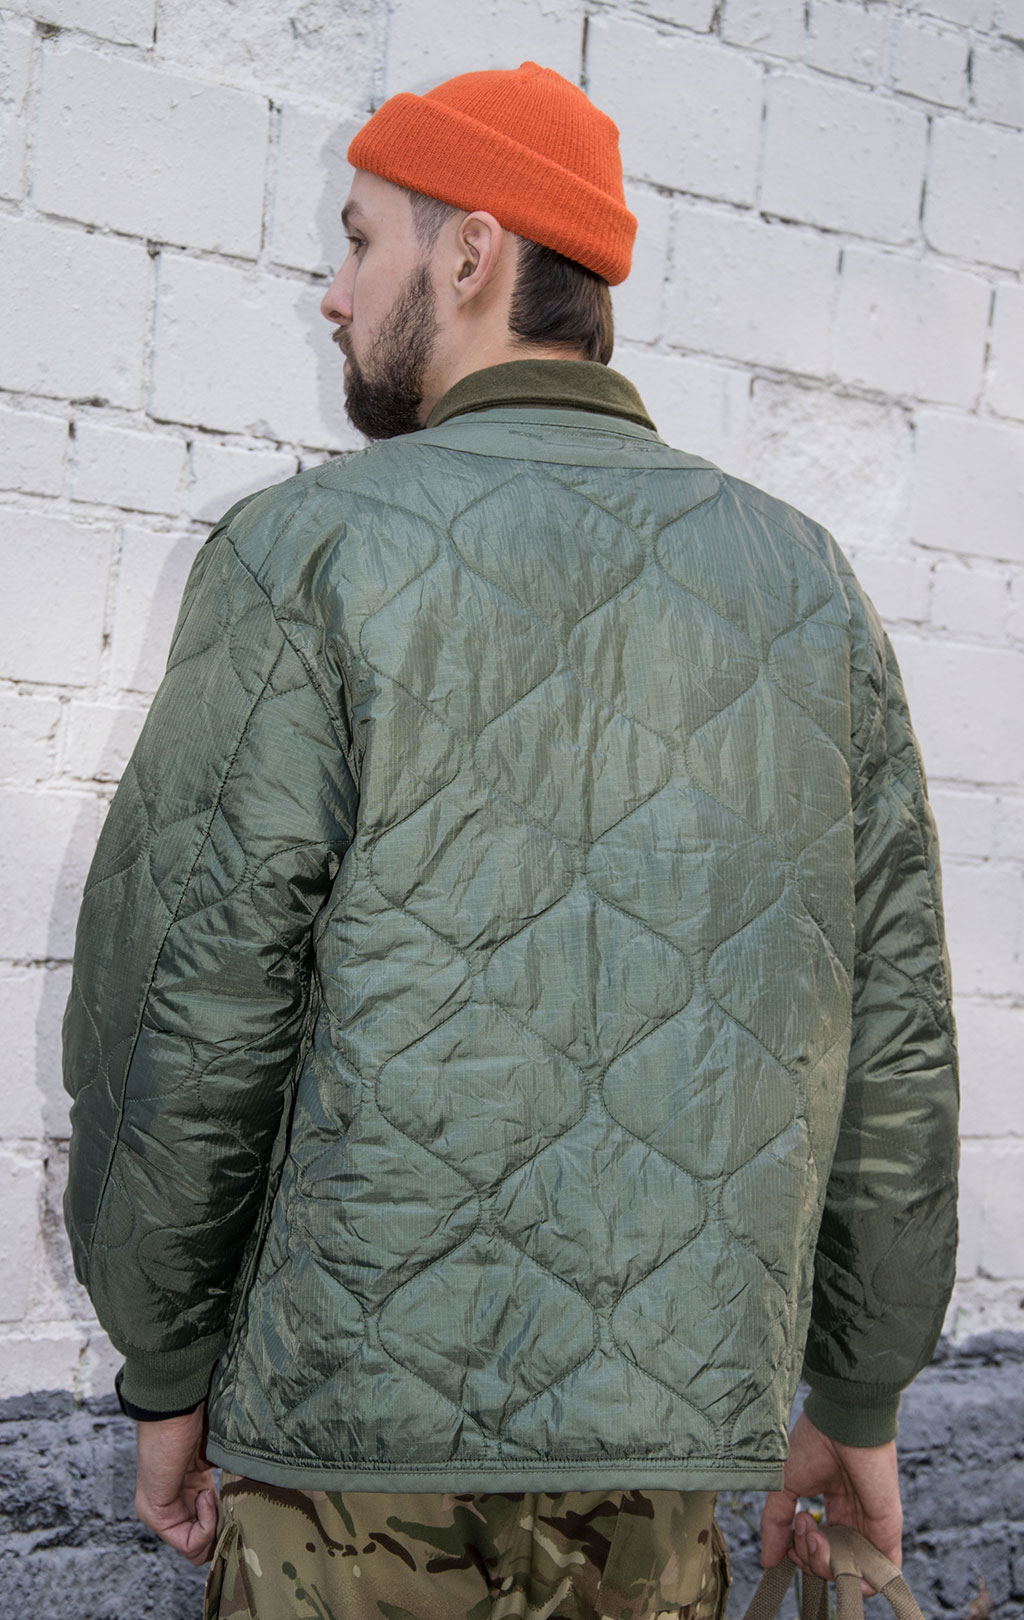 Куртка-подстёжка ALPHA INDUSTRIES CLASSIC big size M-65 с карманами и манжетами olive 